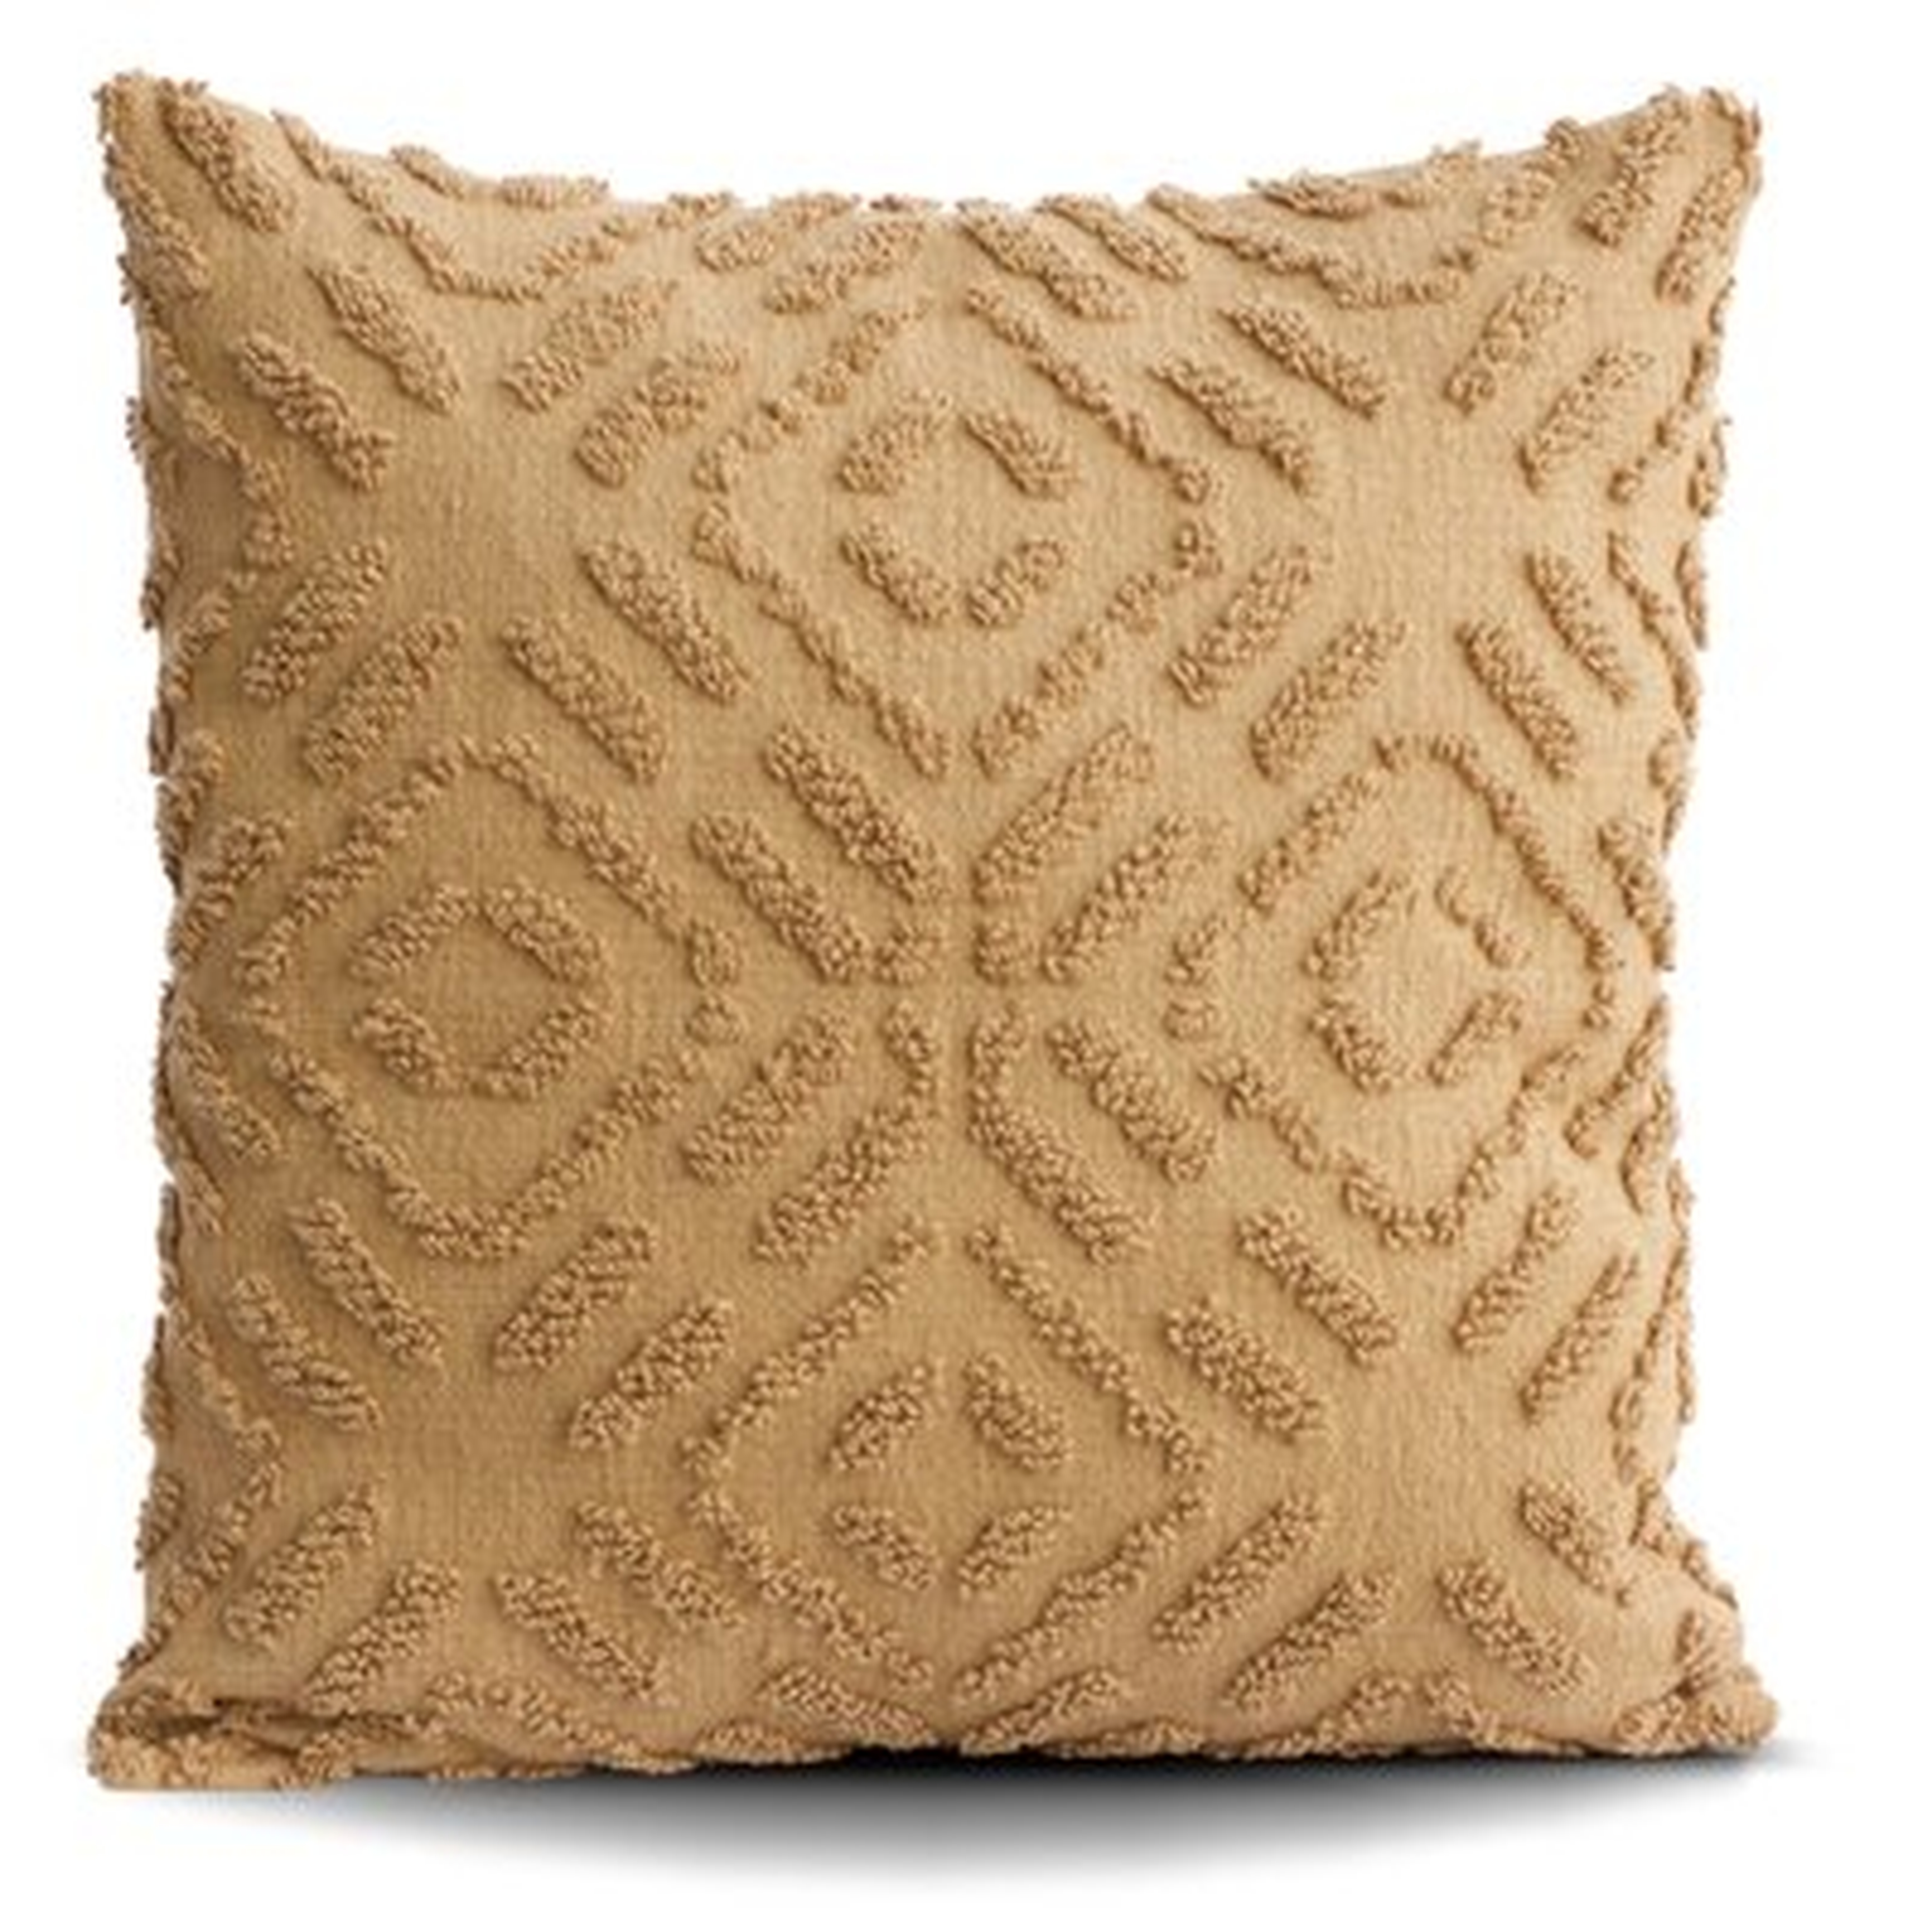 Square Cotton Pillow Cover - Wayfair